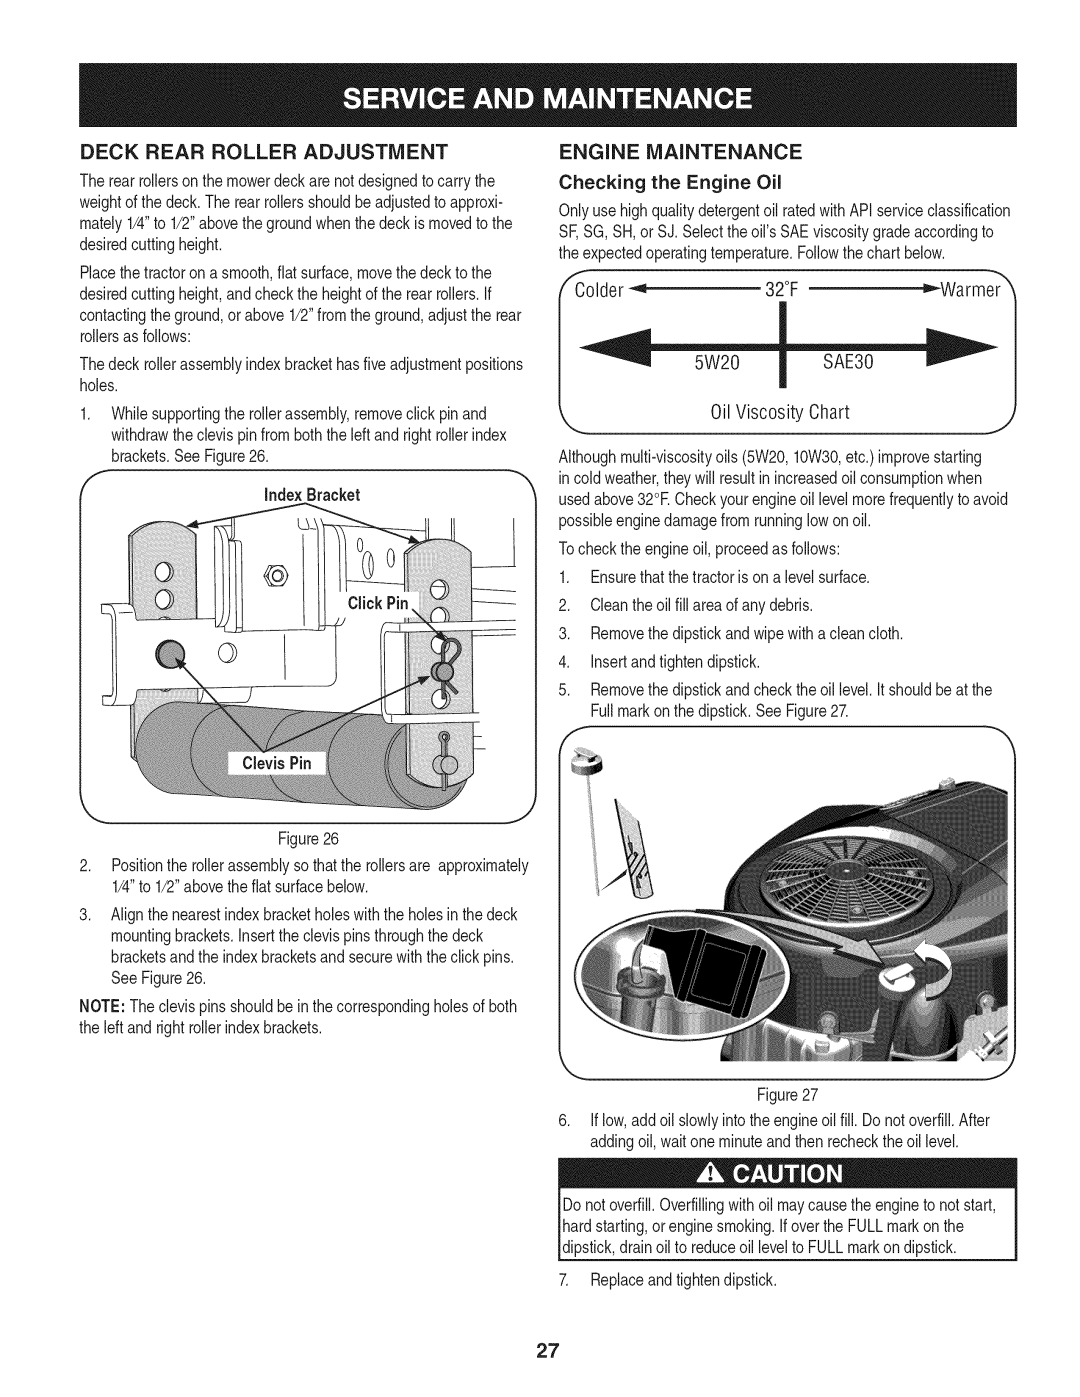 Craftsman 247.28984, PGT9000 manual Deck Rear Roller Adjustment, Engine Maintenance 